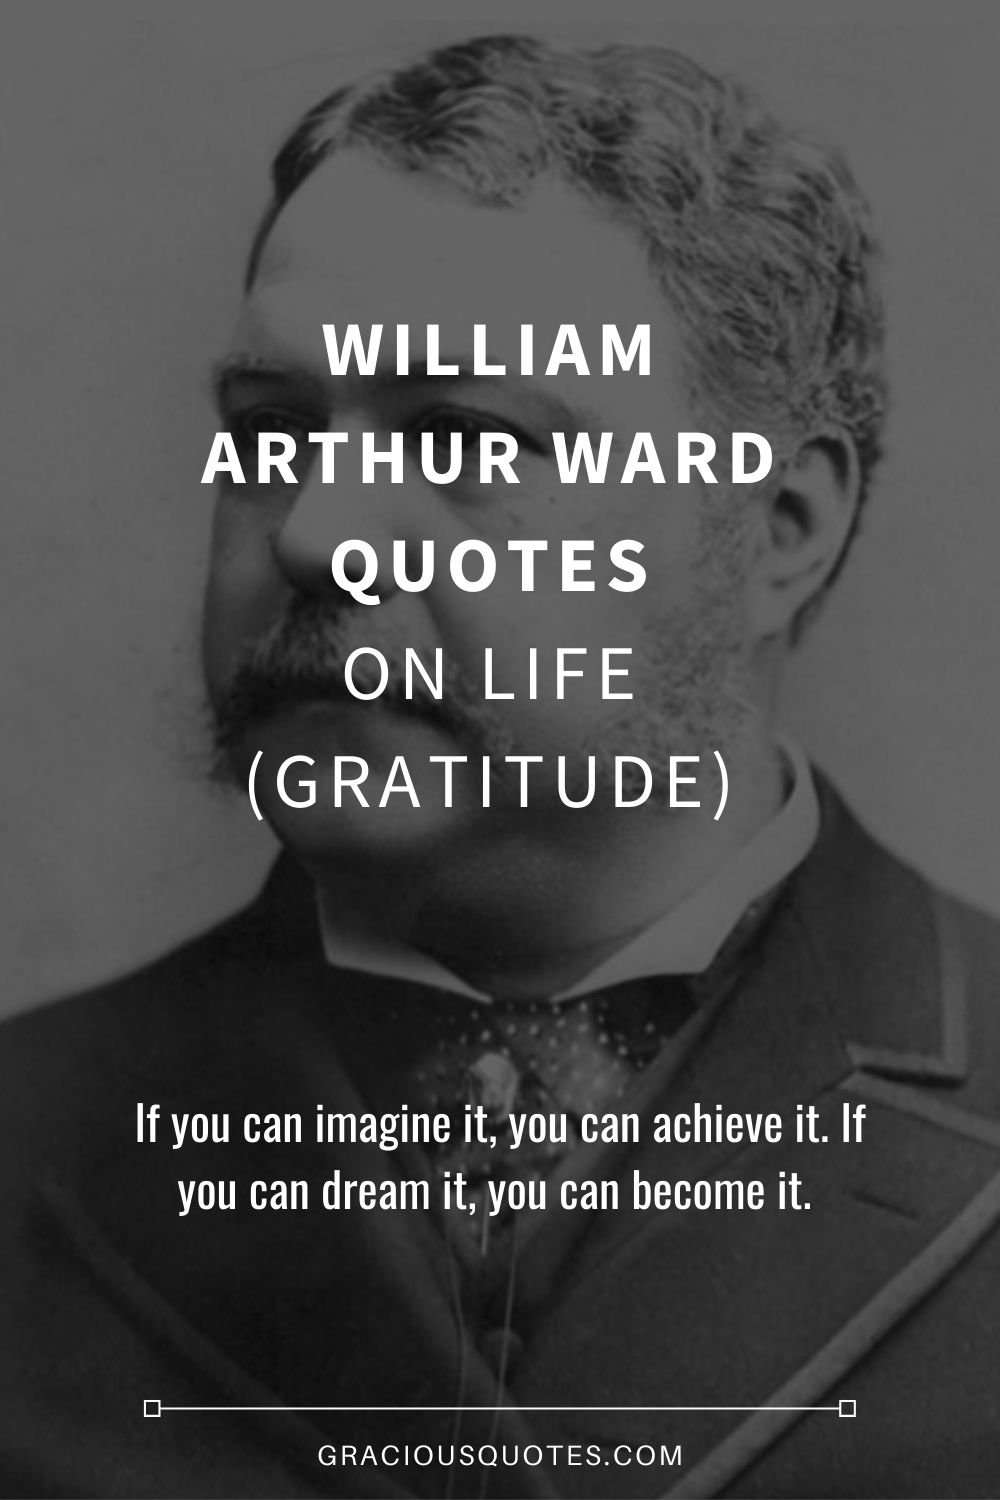 William Arthur Ward Quotes on Life (GRATITUDE) - Gracious Quotes